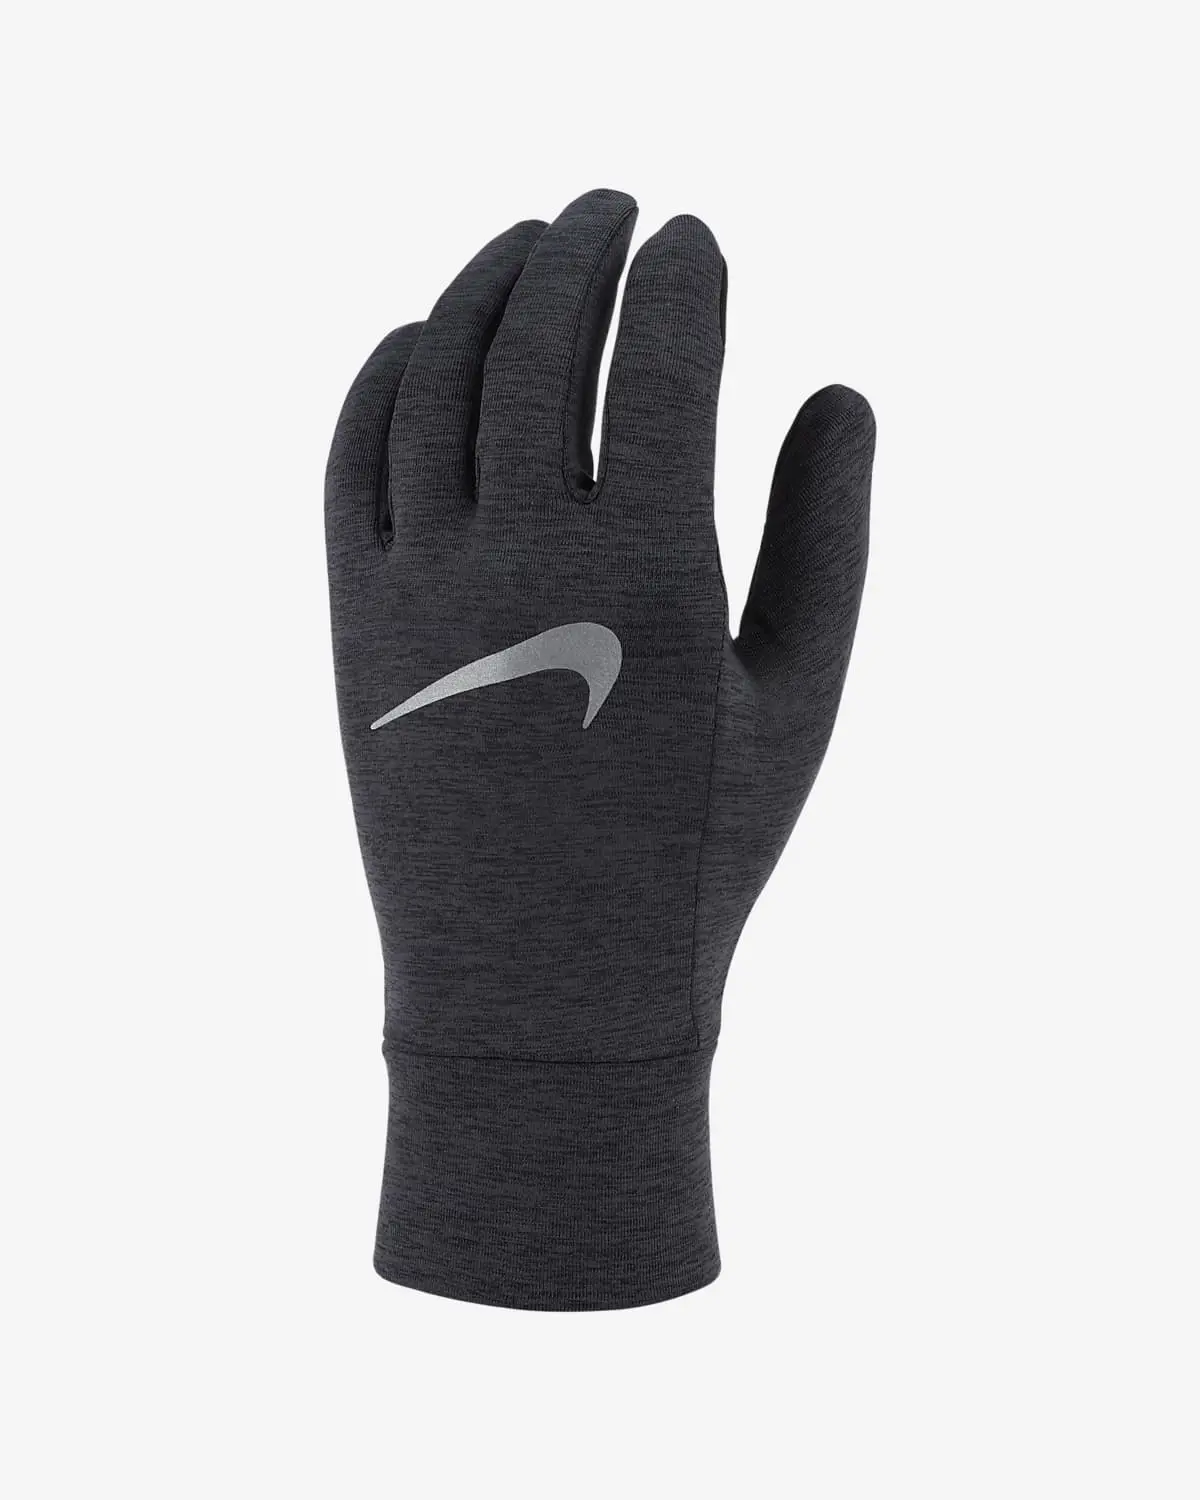 Nike Gloves. 1